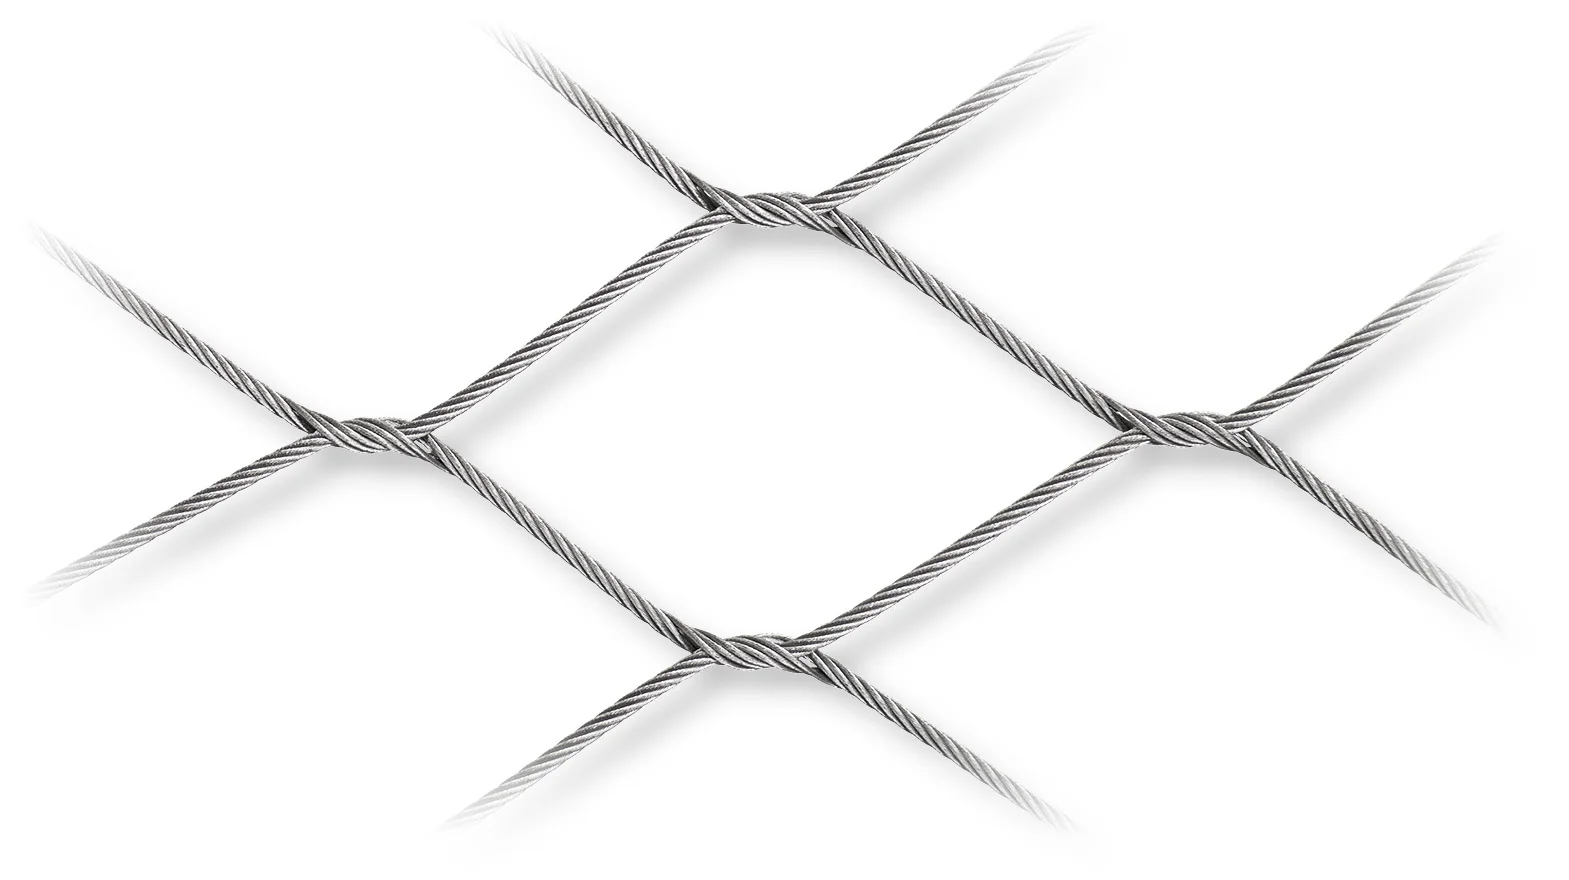 Filet flexible de Mesh Cable Web de câble métallique d'acier inoxydable d'oxyde noir pour la balustrade ou clôturer 3